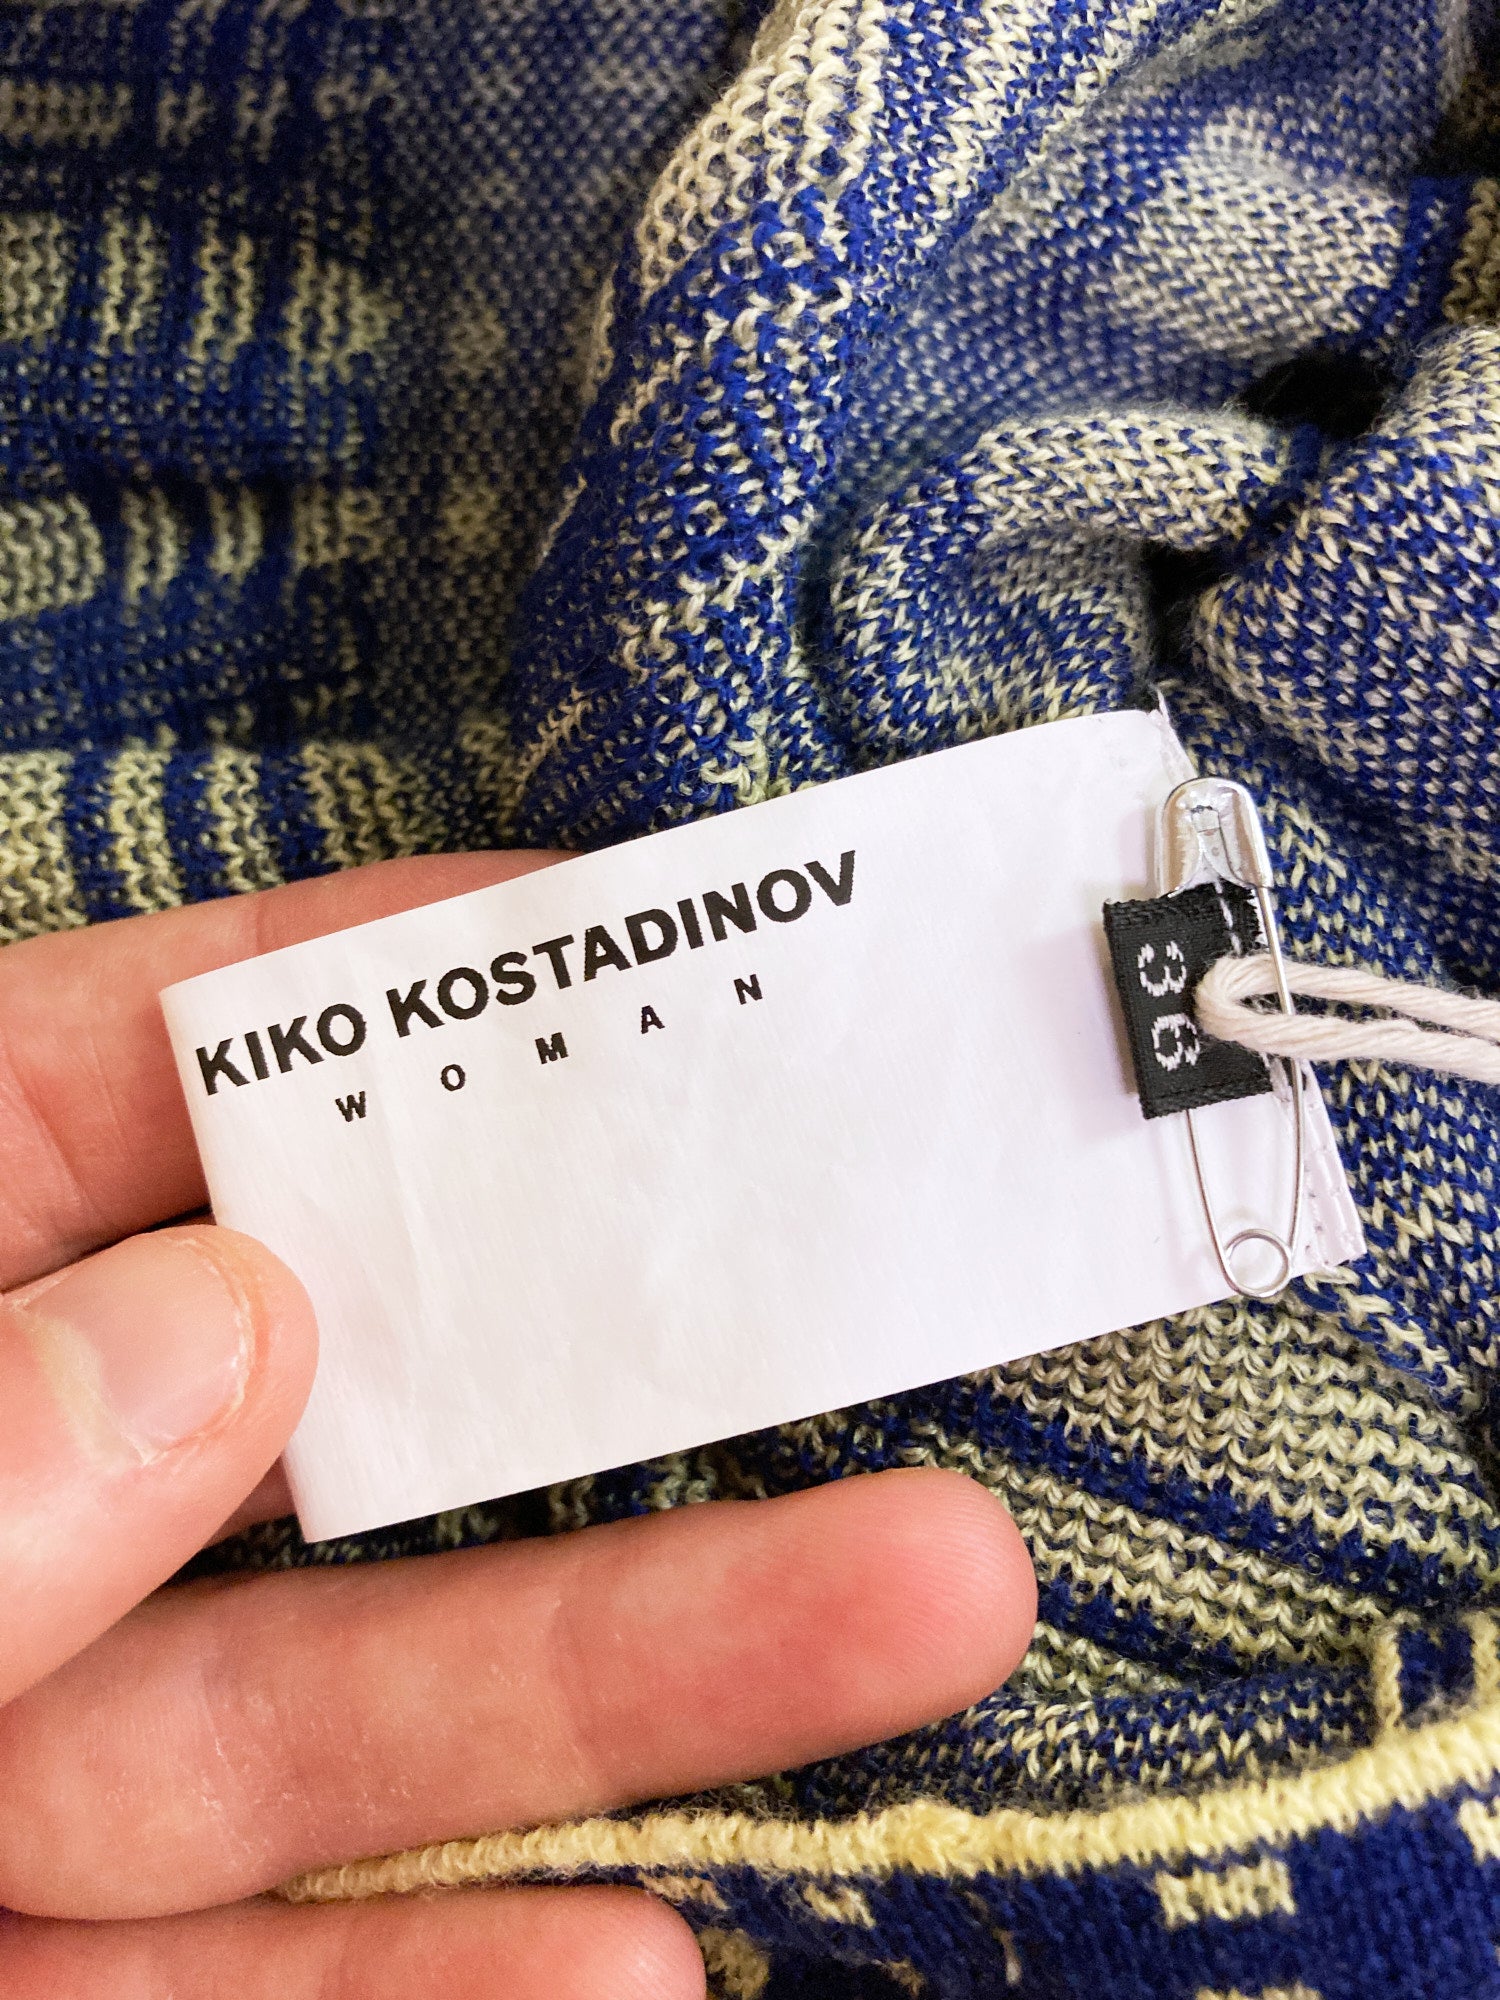 Kiko Kostadinov Woman AW2020 green blue tartan wool 3D knit column dress - sz 36